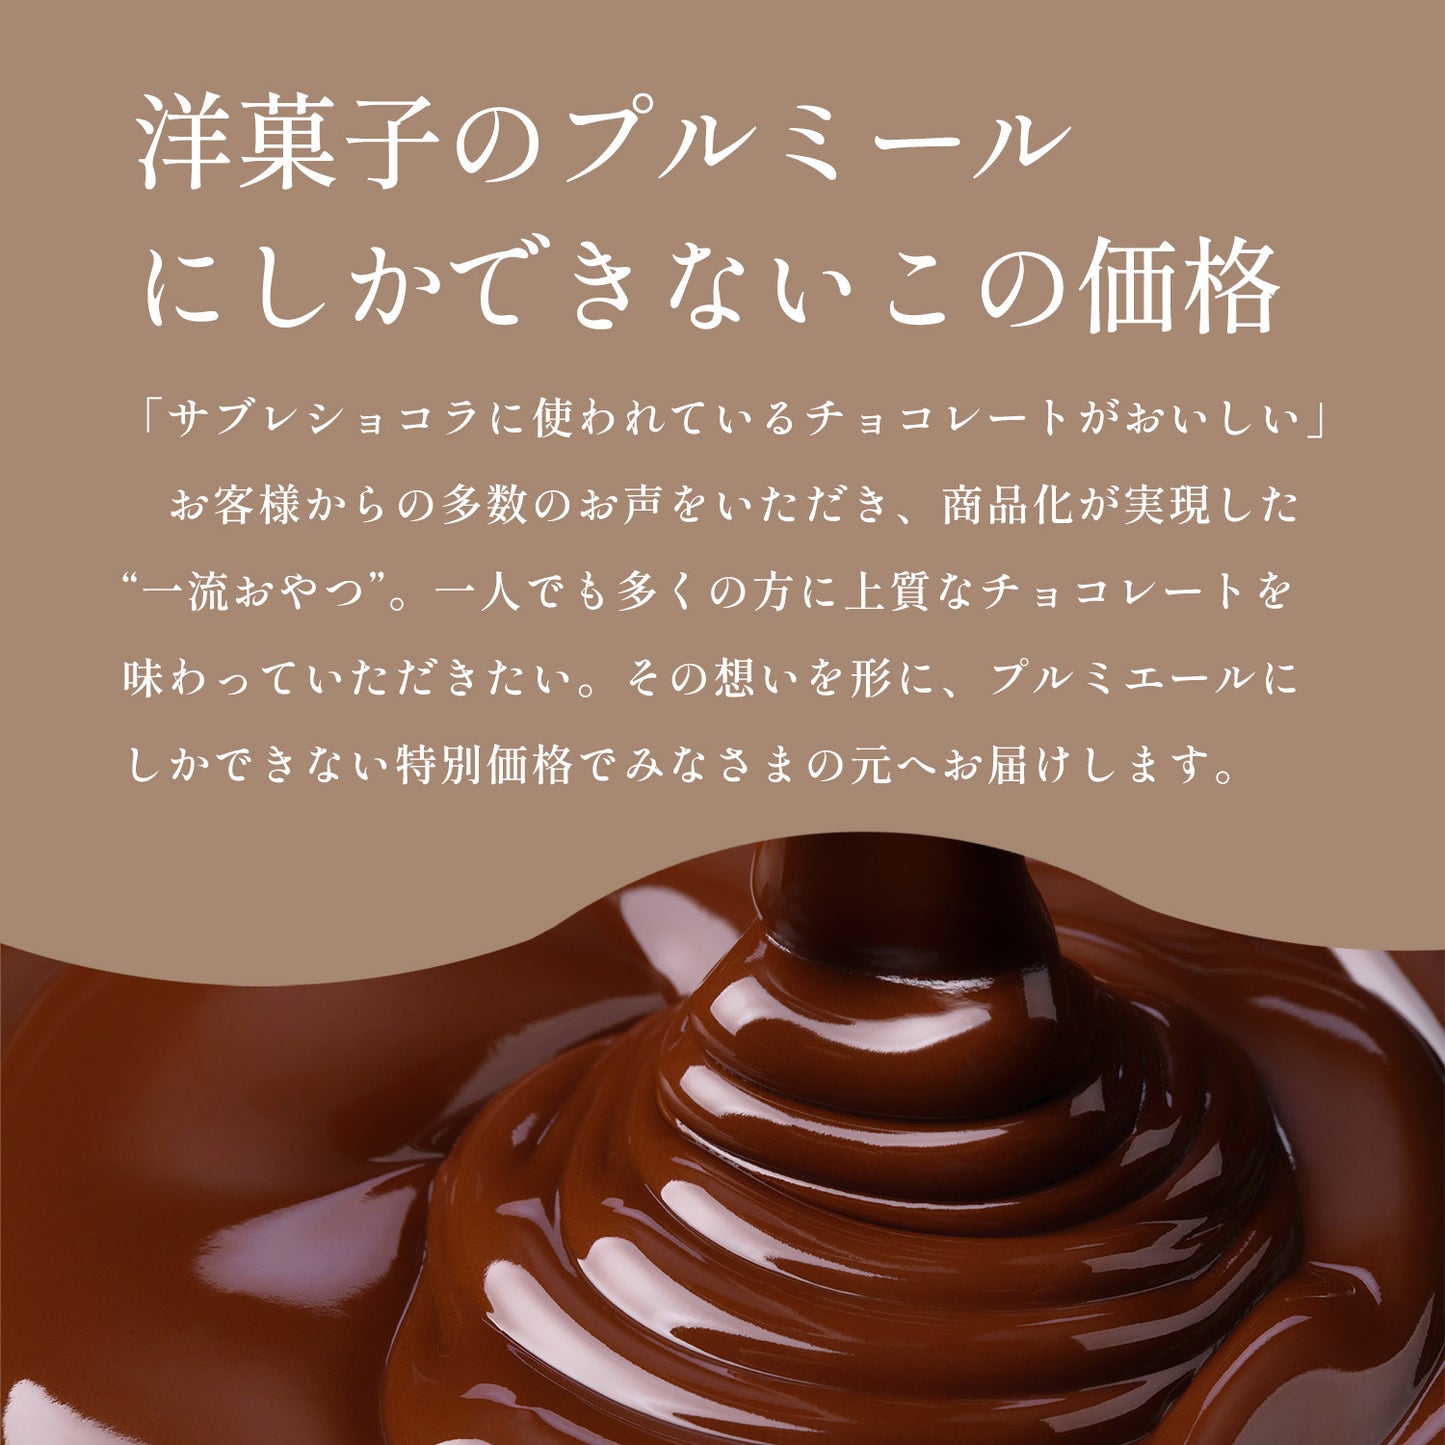 チョコレート 一流おやつチョコレート カカオ66% フランス クーベルチュール プチギフト 食べ切りサイズ バレンタイン ホワイトデー